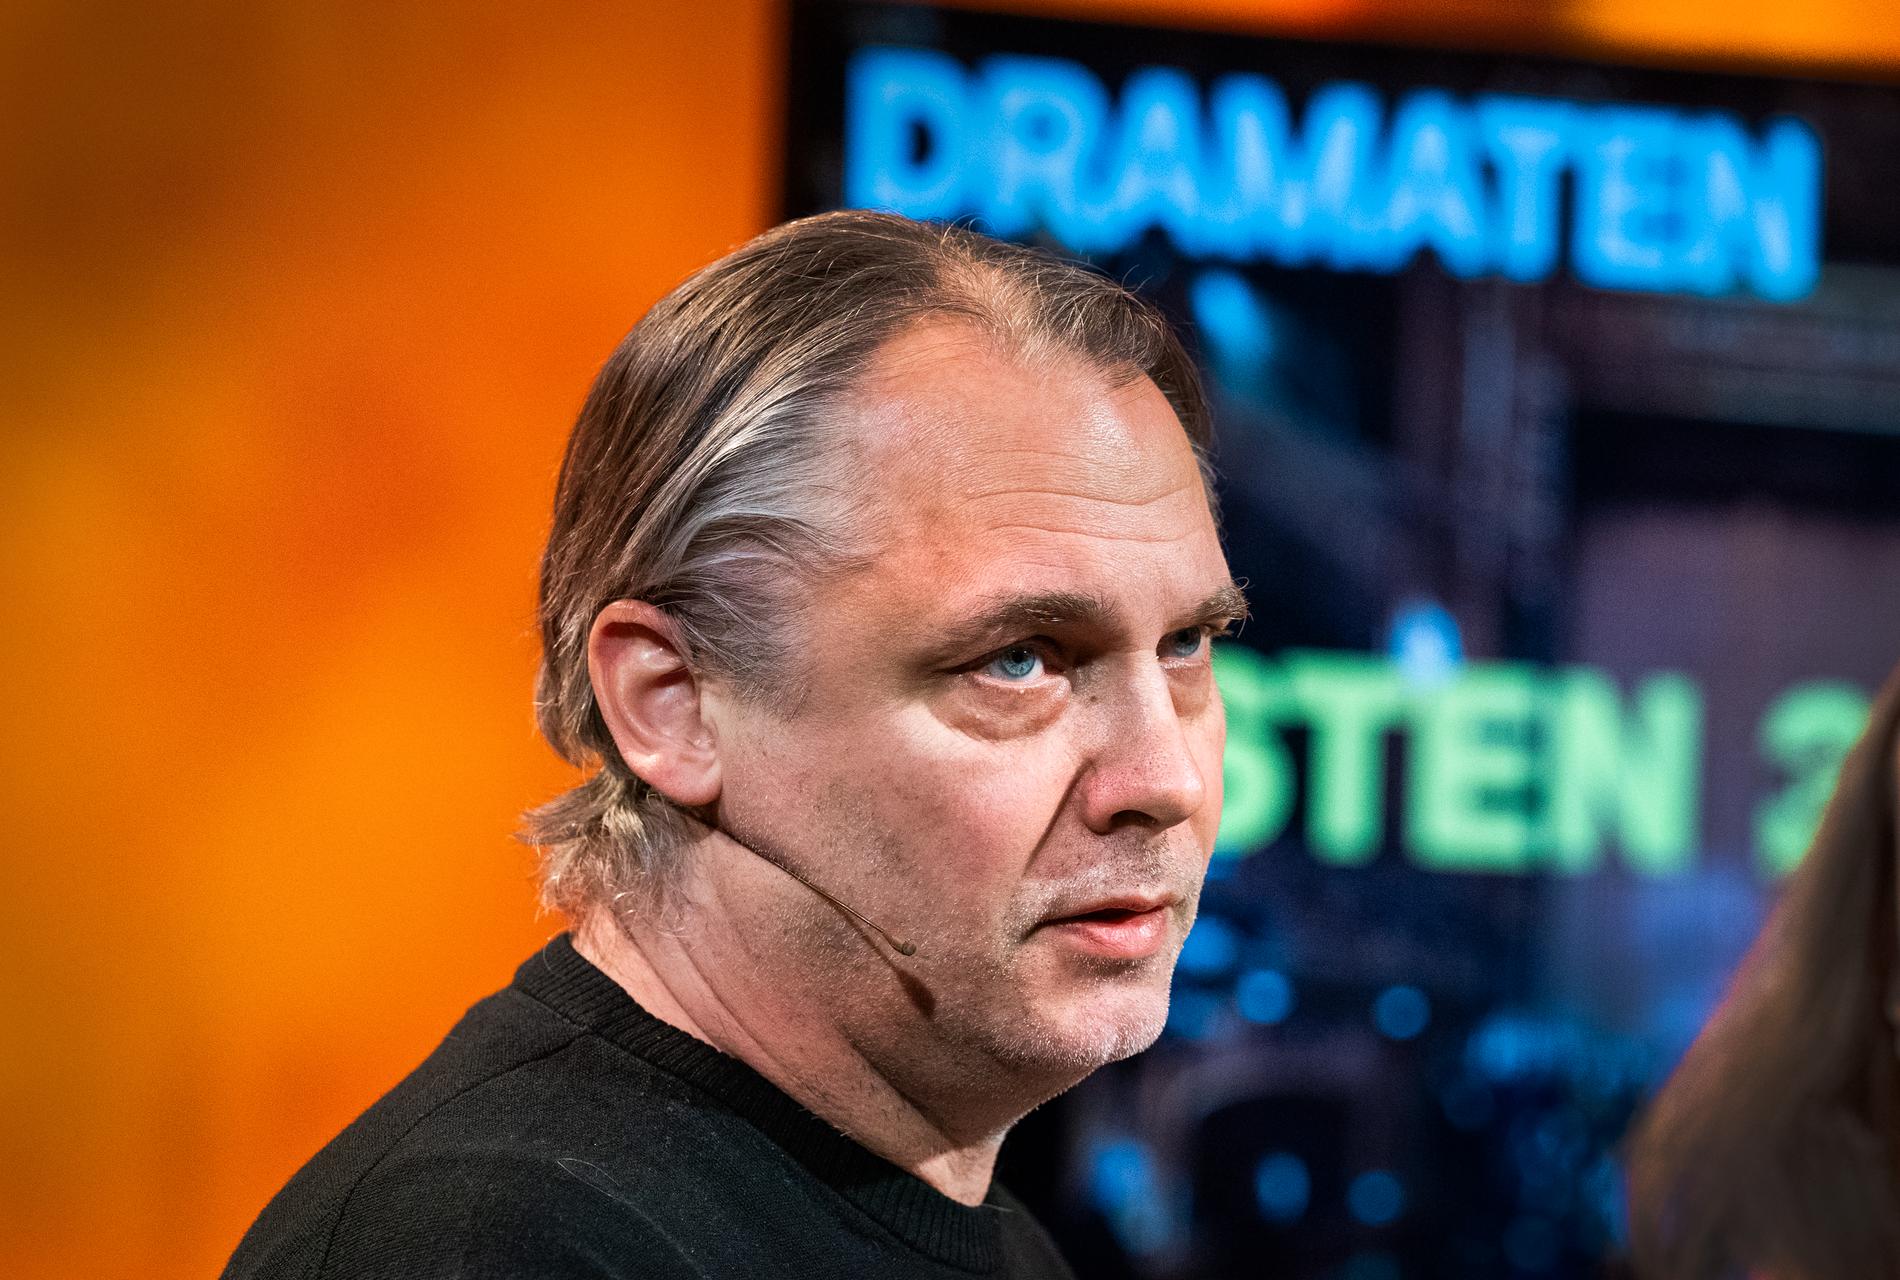 "Risken med minskade anslag är att teaterverksamheten blir mer ängslig", säger Mattias Andersson, chef på Dramaten i Stockholm.